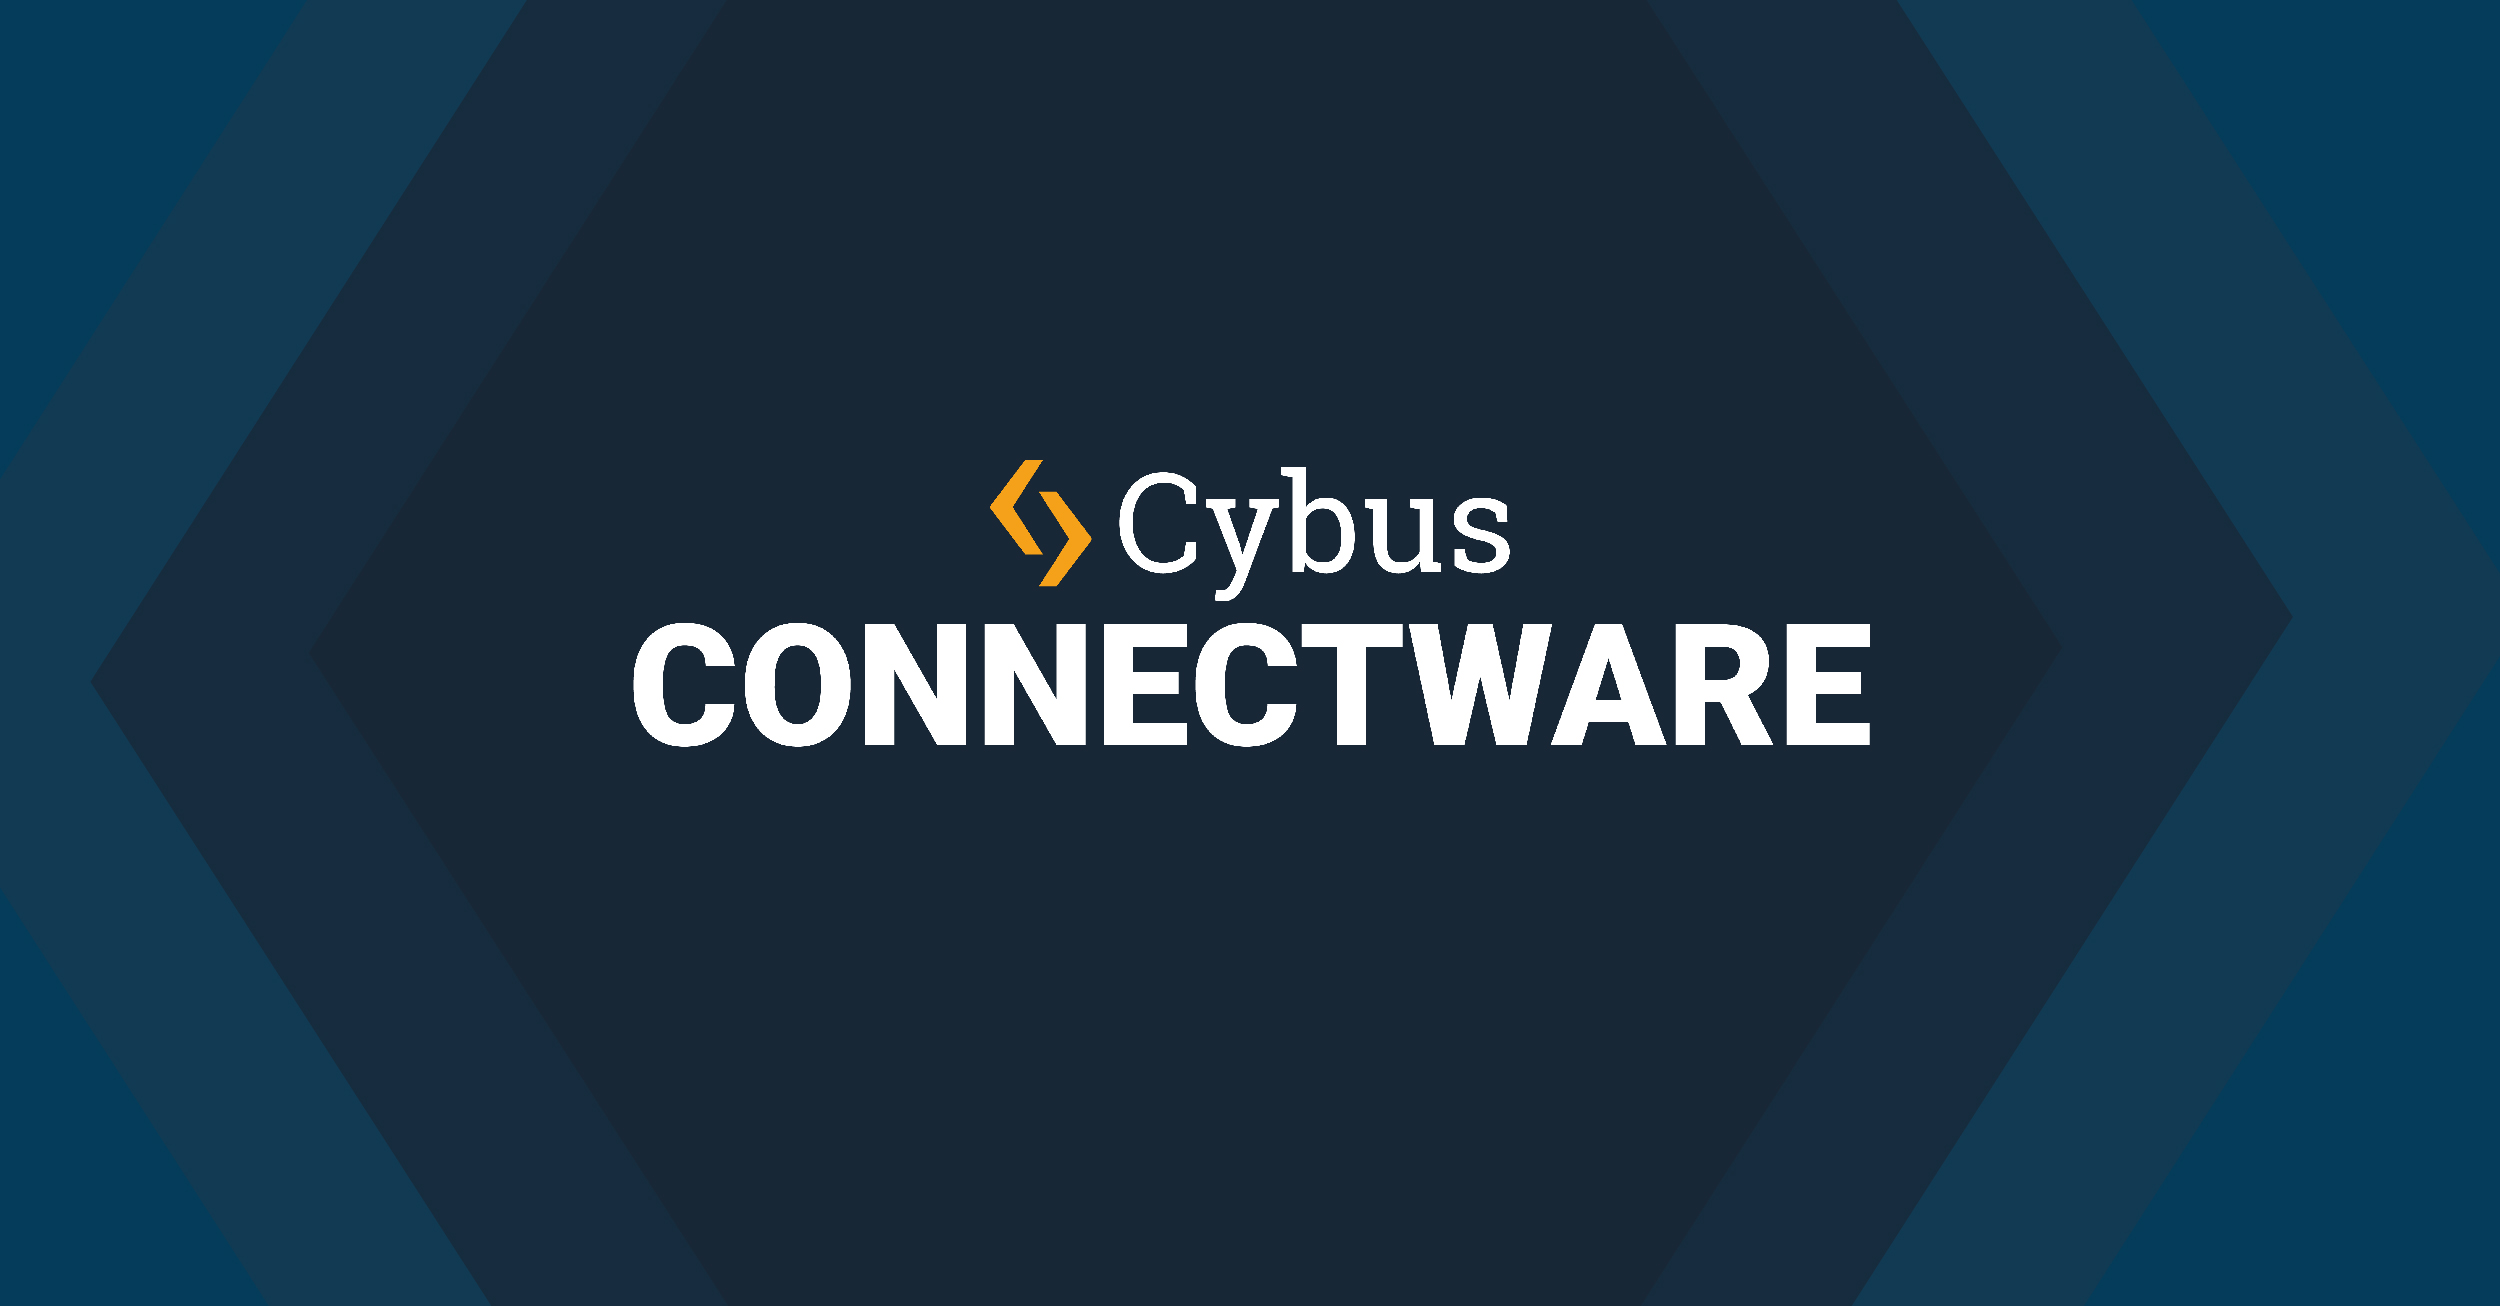 www.cybus.io